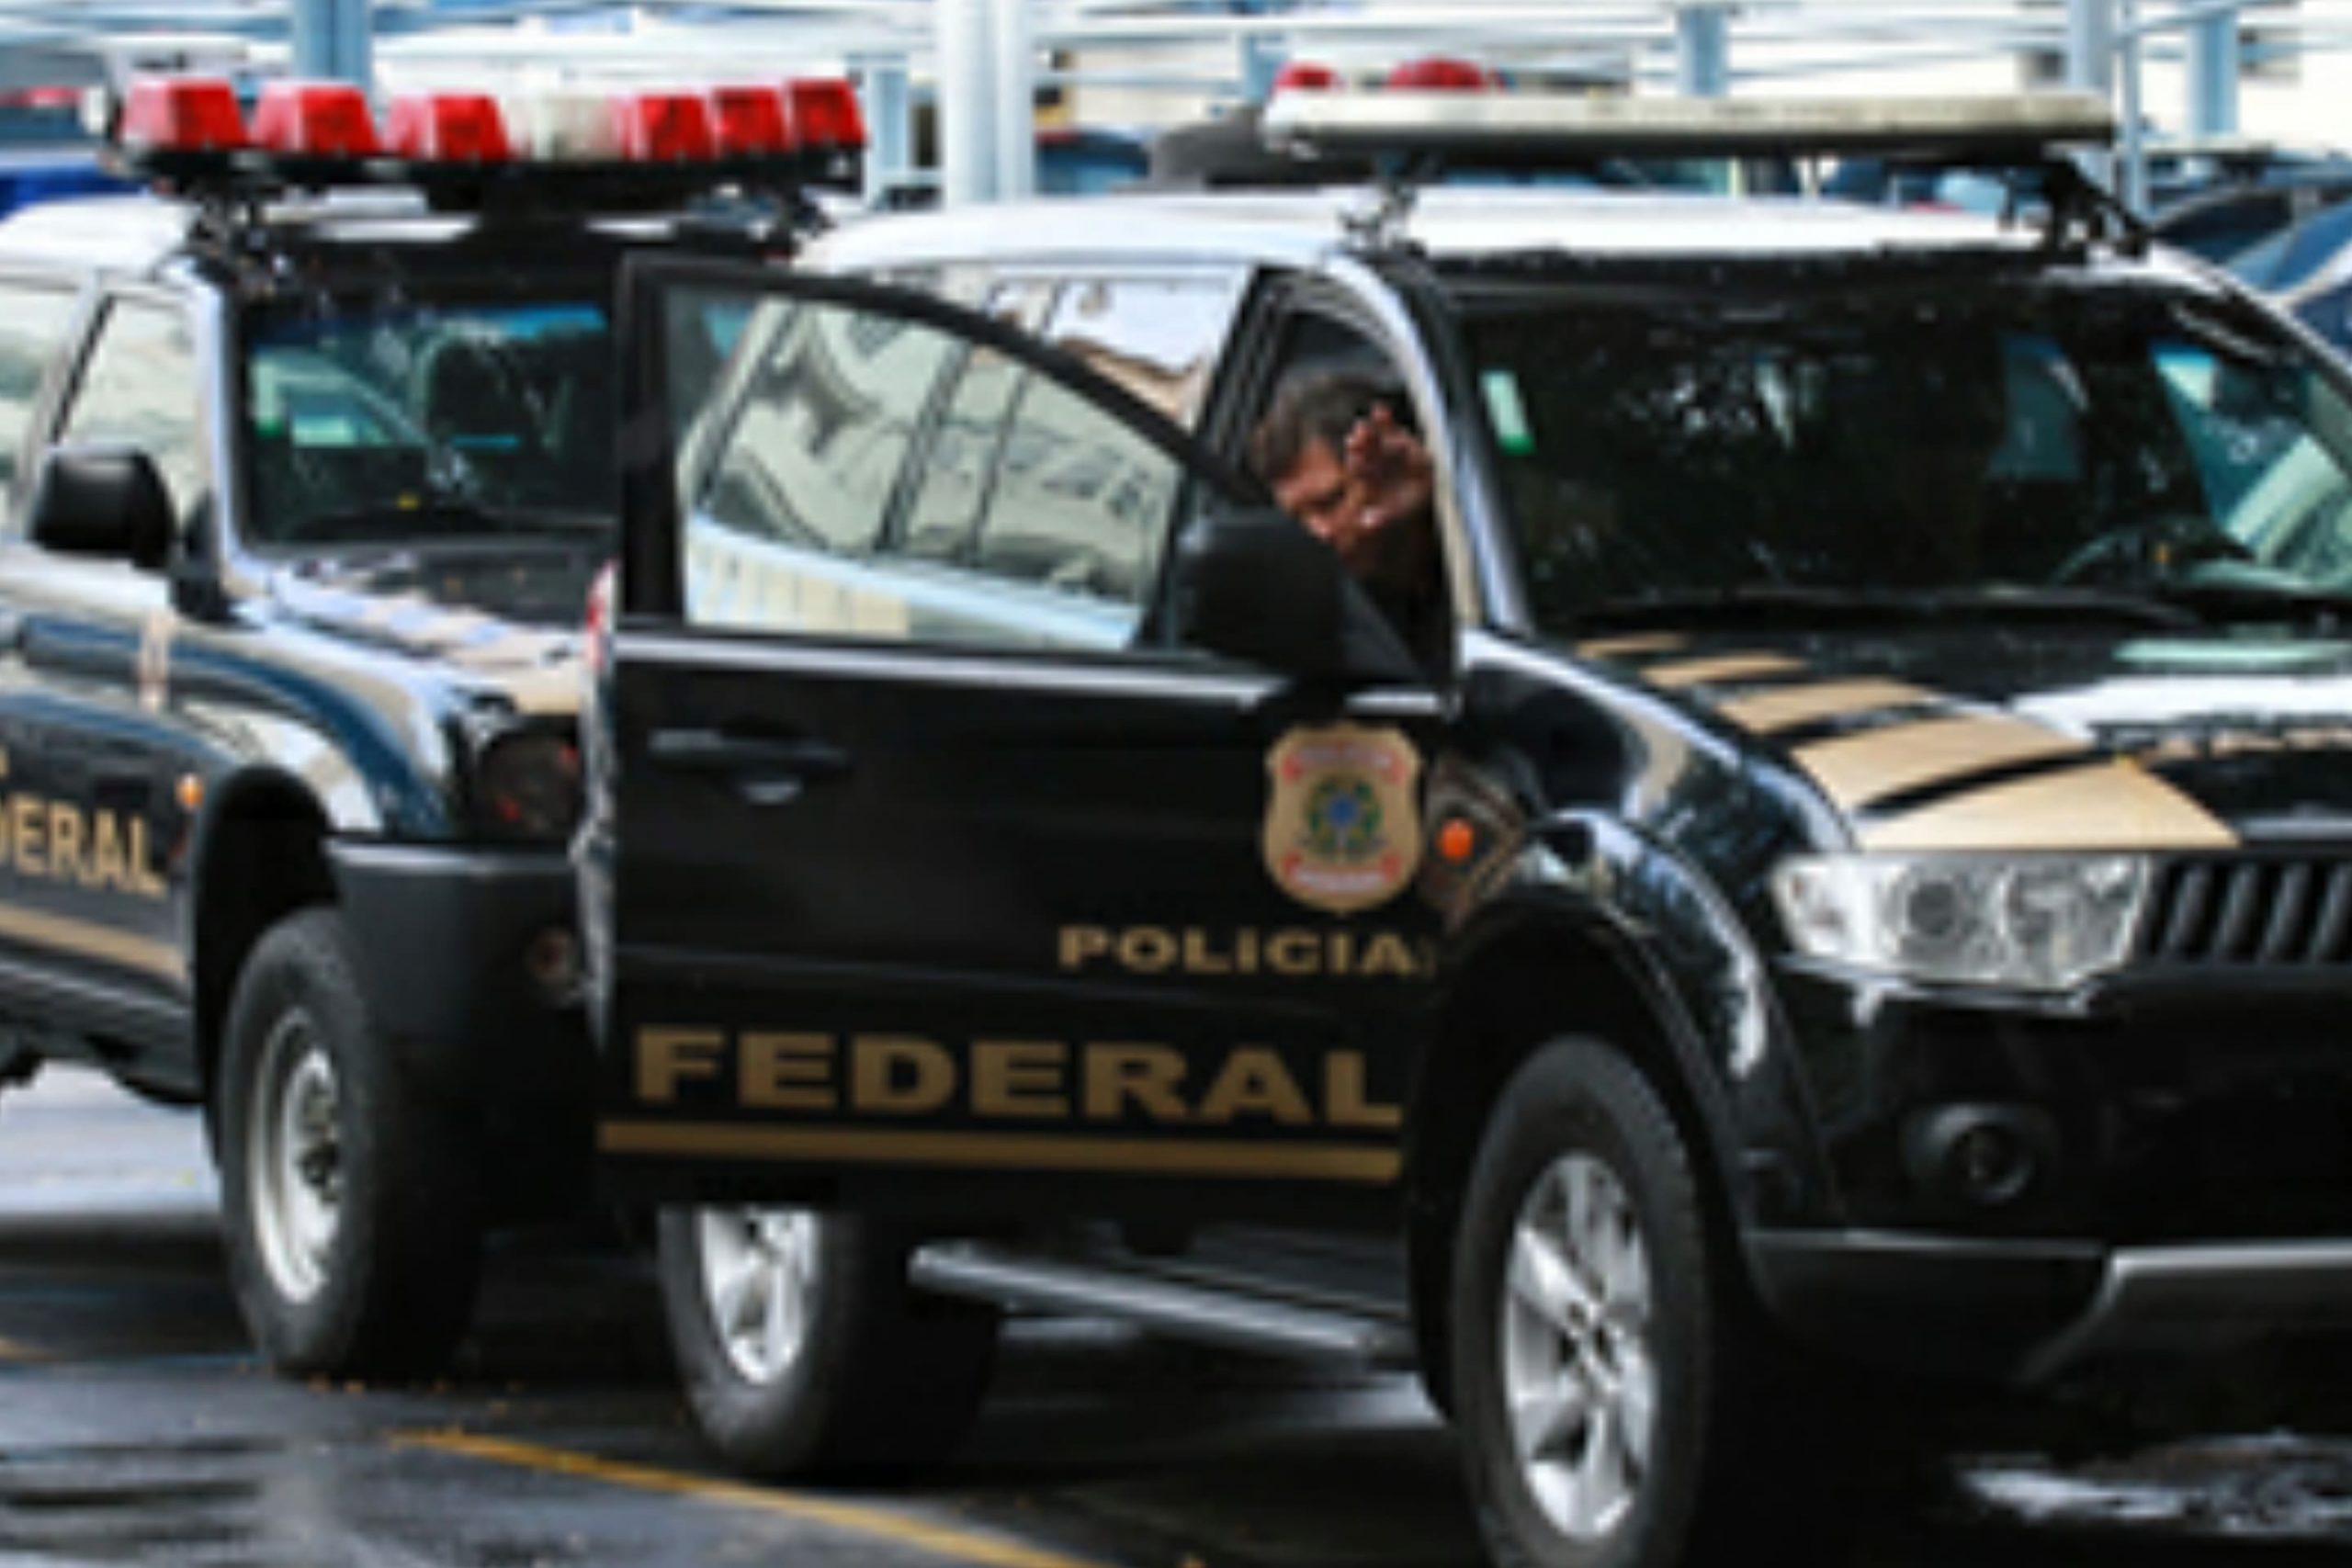 BOTUPORÃ: Prefeitura esclarece operação da PF no município